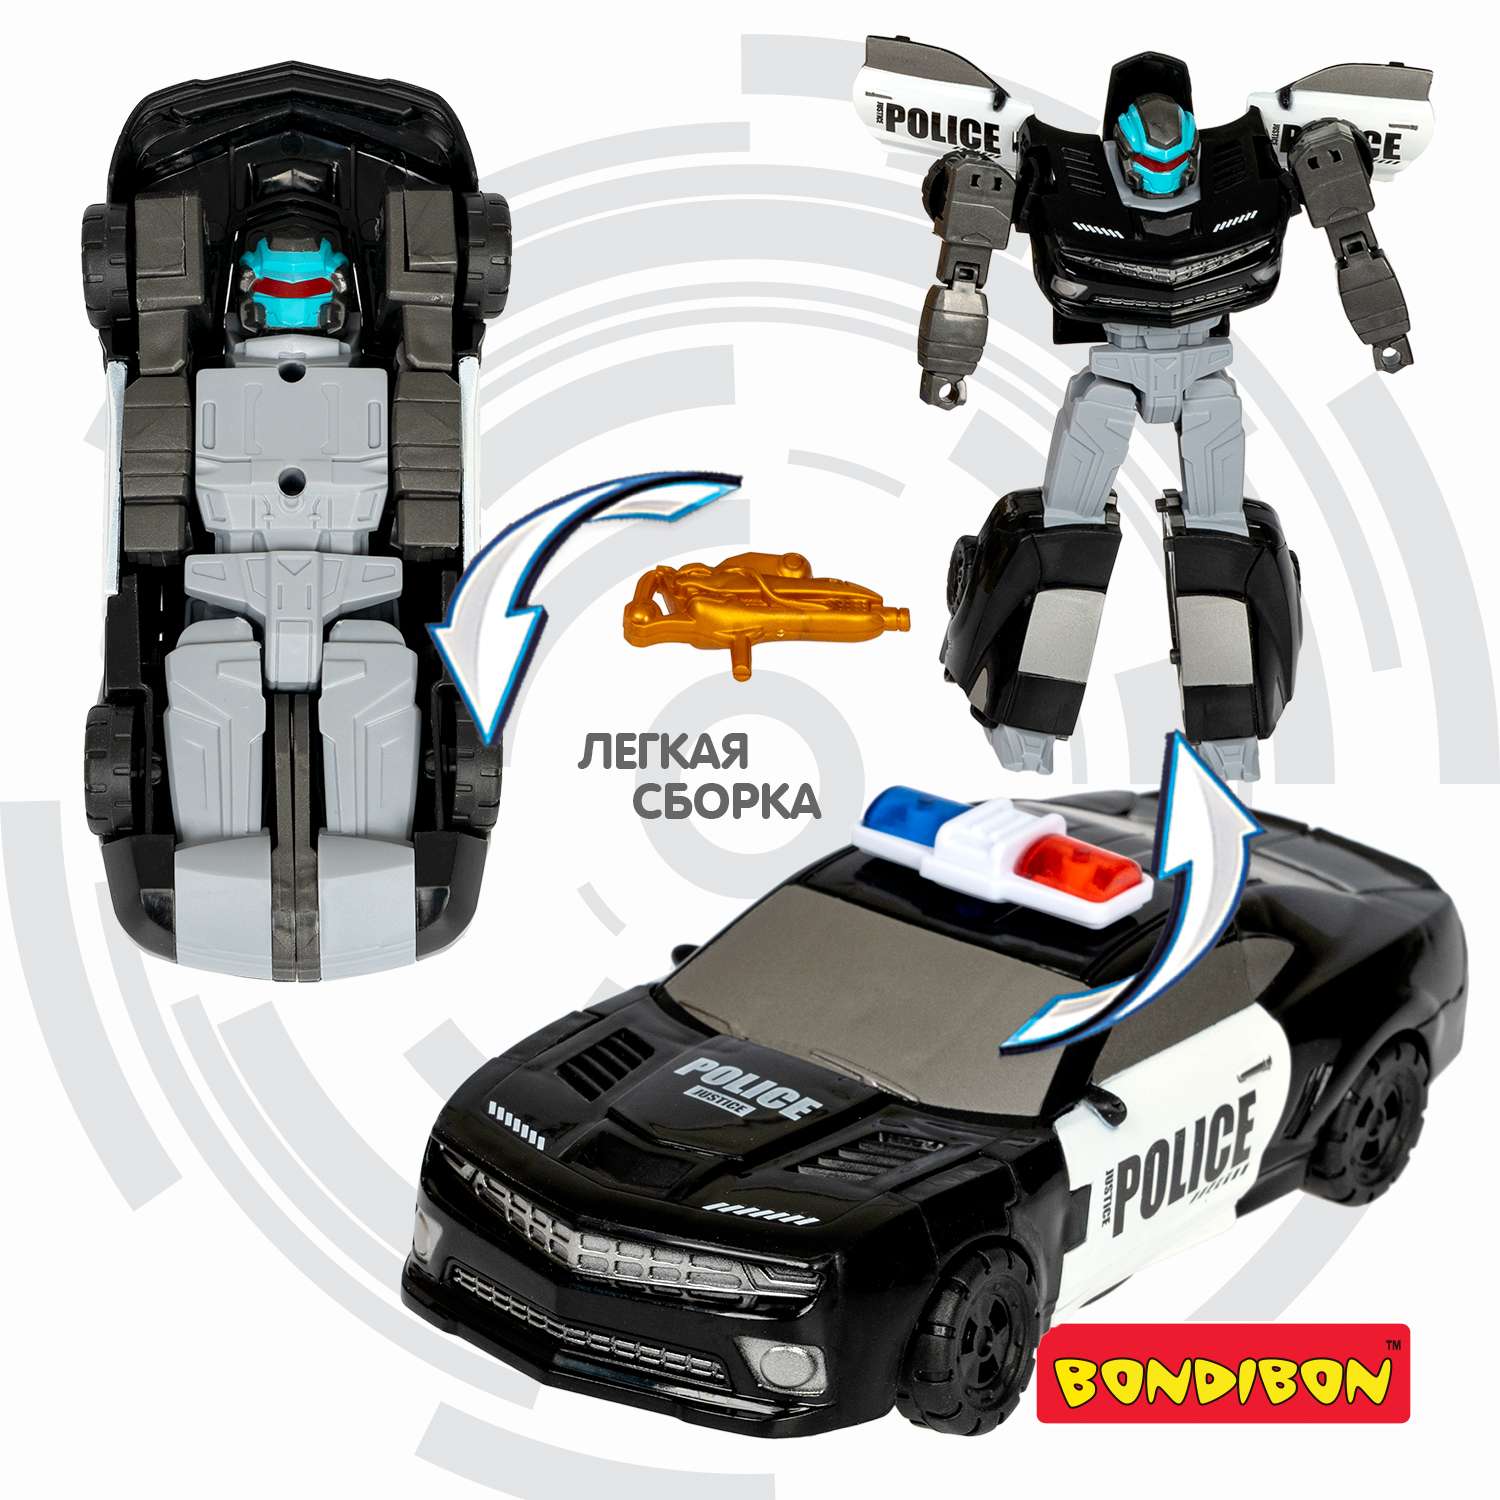 Трансформер BONDIBON Bondibot Робот-автомобиль 2 в 1 полиция черного цвета - фото 6